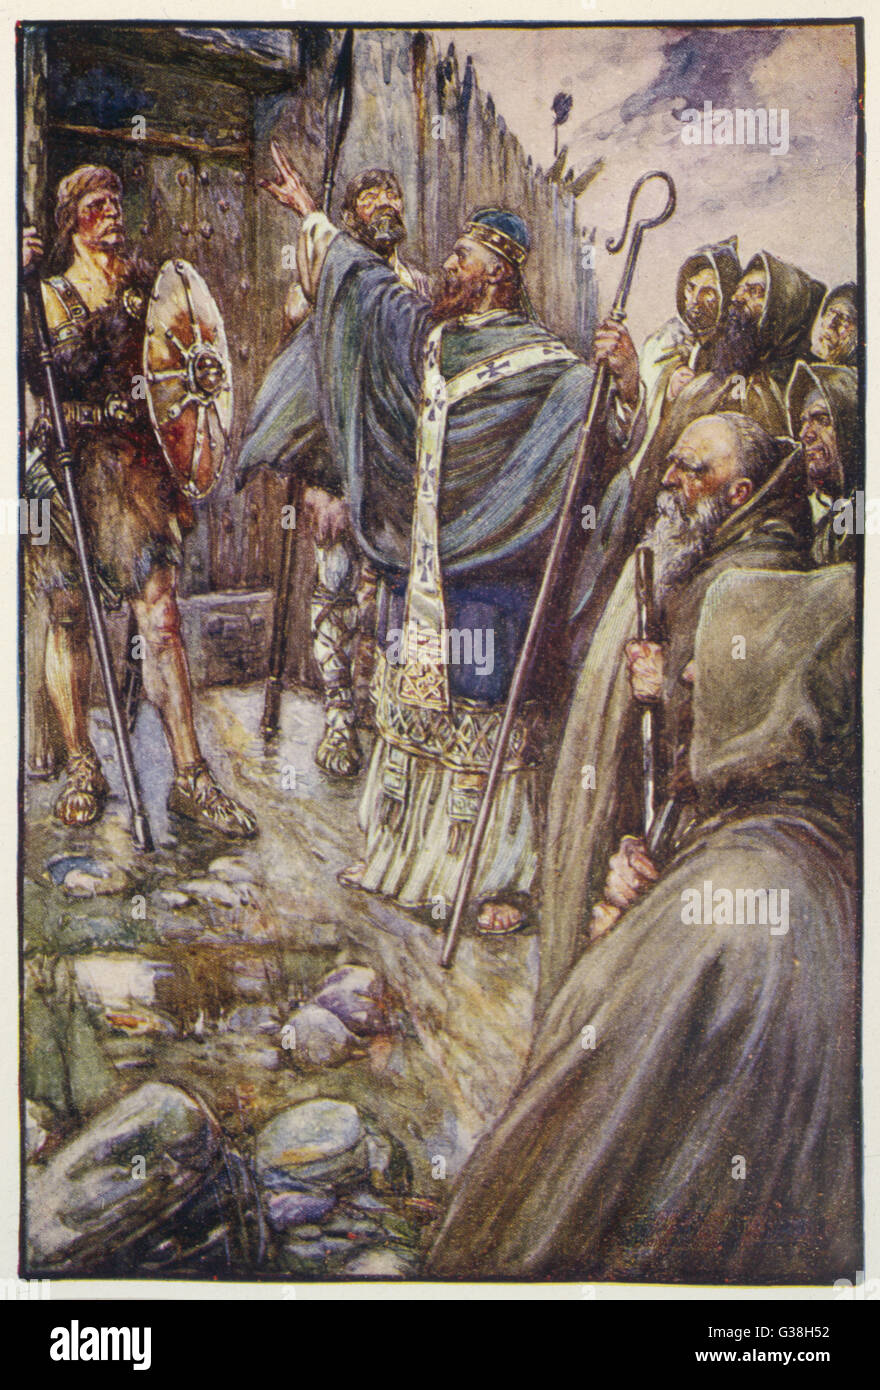 St. COLUMBA irischer Heiliger kommt in Inverness, die Heiden Picts, ein Wunder zu verwenden, um ihre Festungstore aufbringen zu konvertieren.     Datum: 521-597 Stockfoto